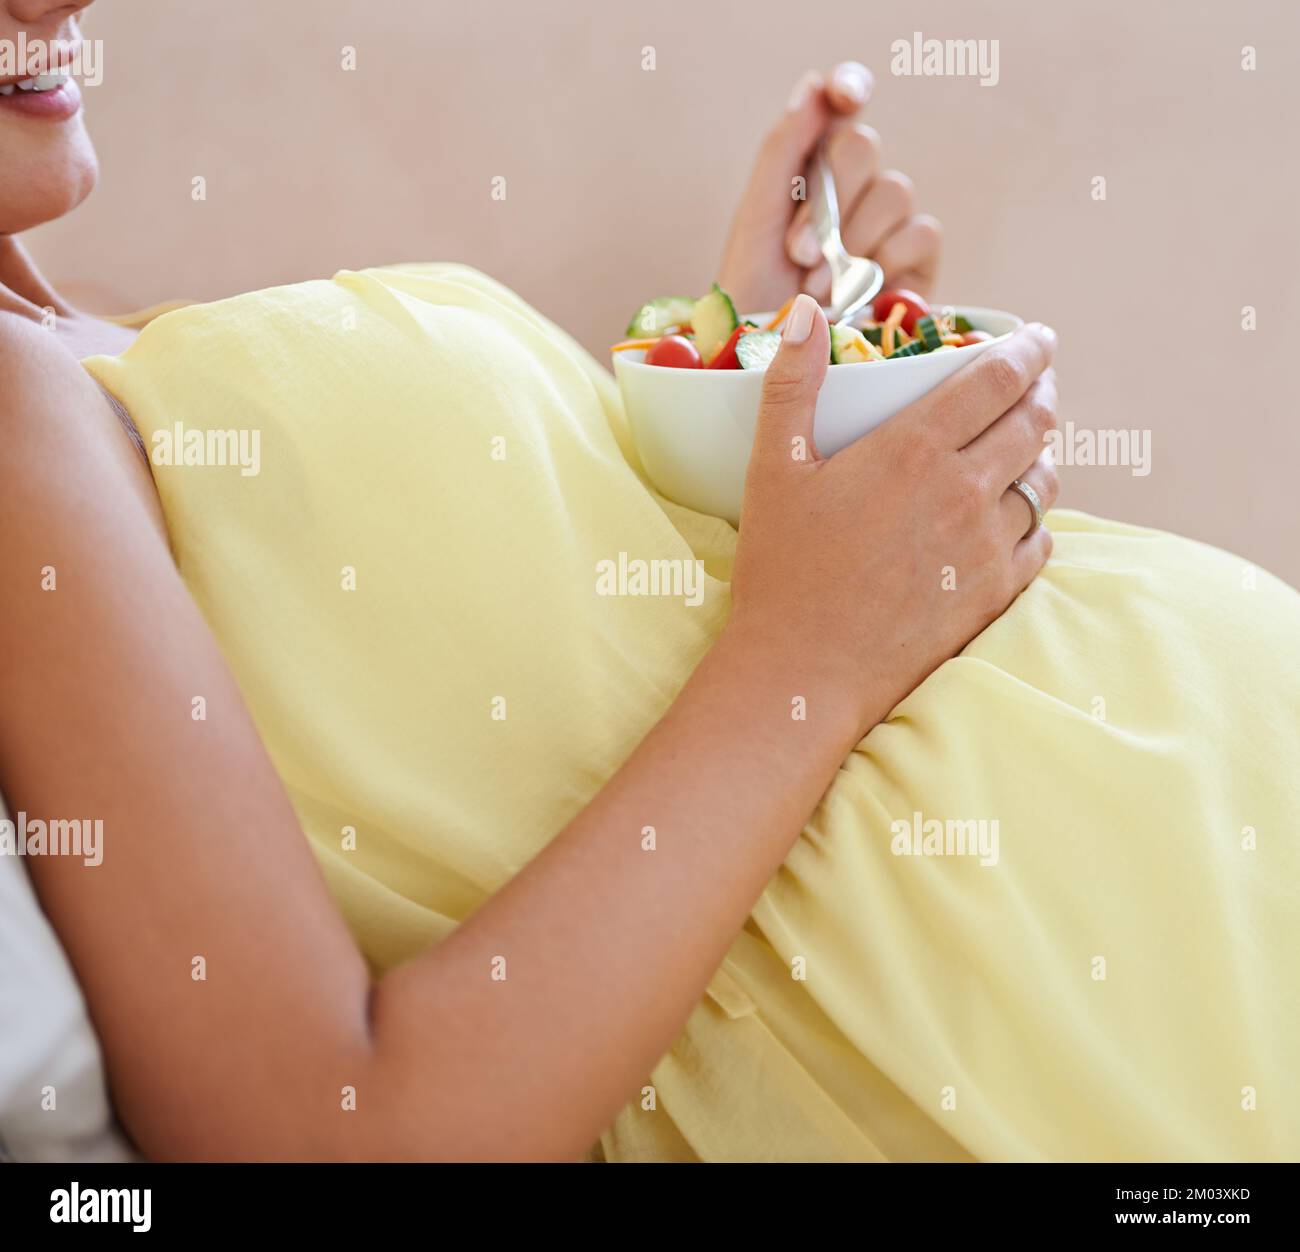 Grossesse en bonne santé, grossesse heureuse. une femme enceinte se détendant sur le canapé tout en mangeant une salade fraîche. Banque D'Images